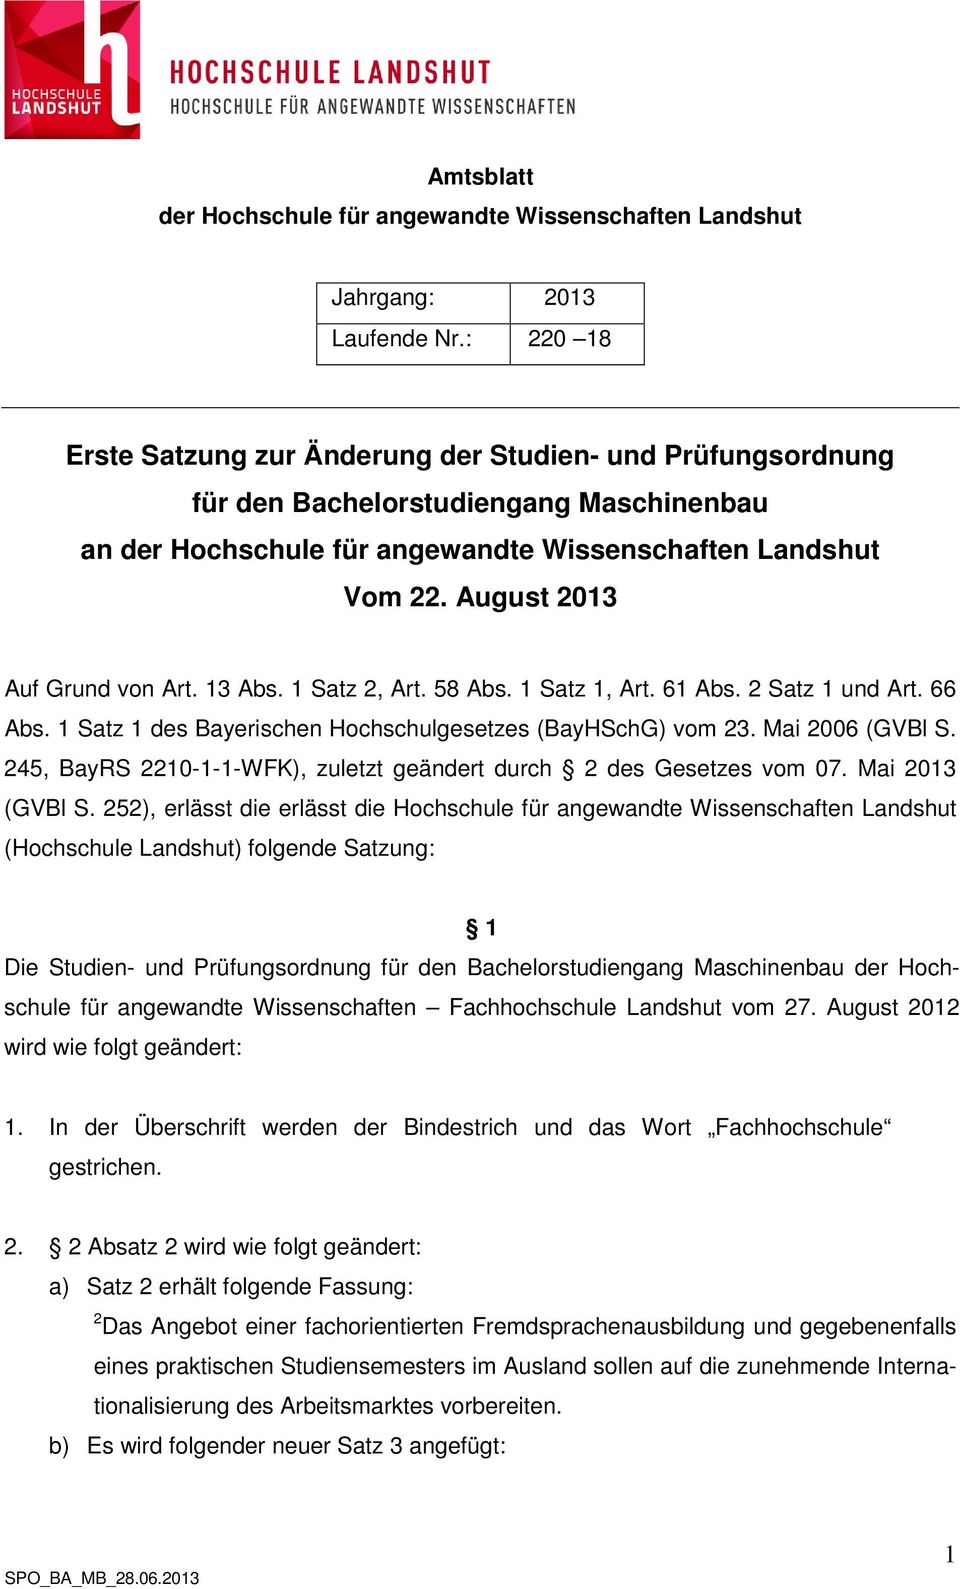 August 2013 Auf Grund von Art. 13 Abs. 1 Satz 2, Art. 58 Abs. 1 Satz 1, Art. 61 Abs. 2 Satz 1 und Art. 66 Abs. 1 Satz 1 des Bayerischen Hochschulgesetzes (BayHSchG) vom 23. Mai 2006 (GVBl S.